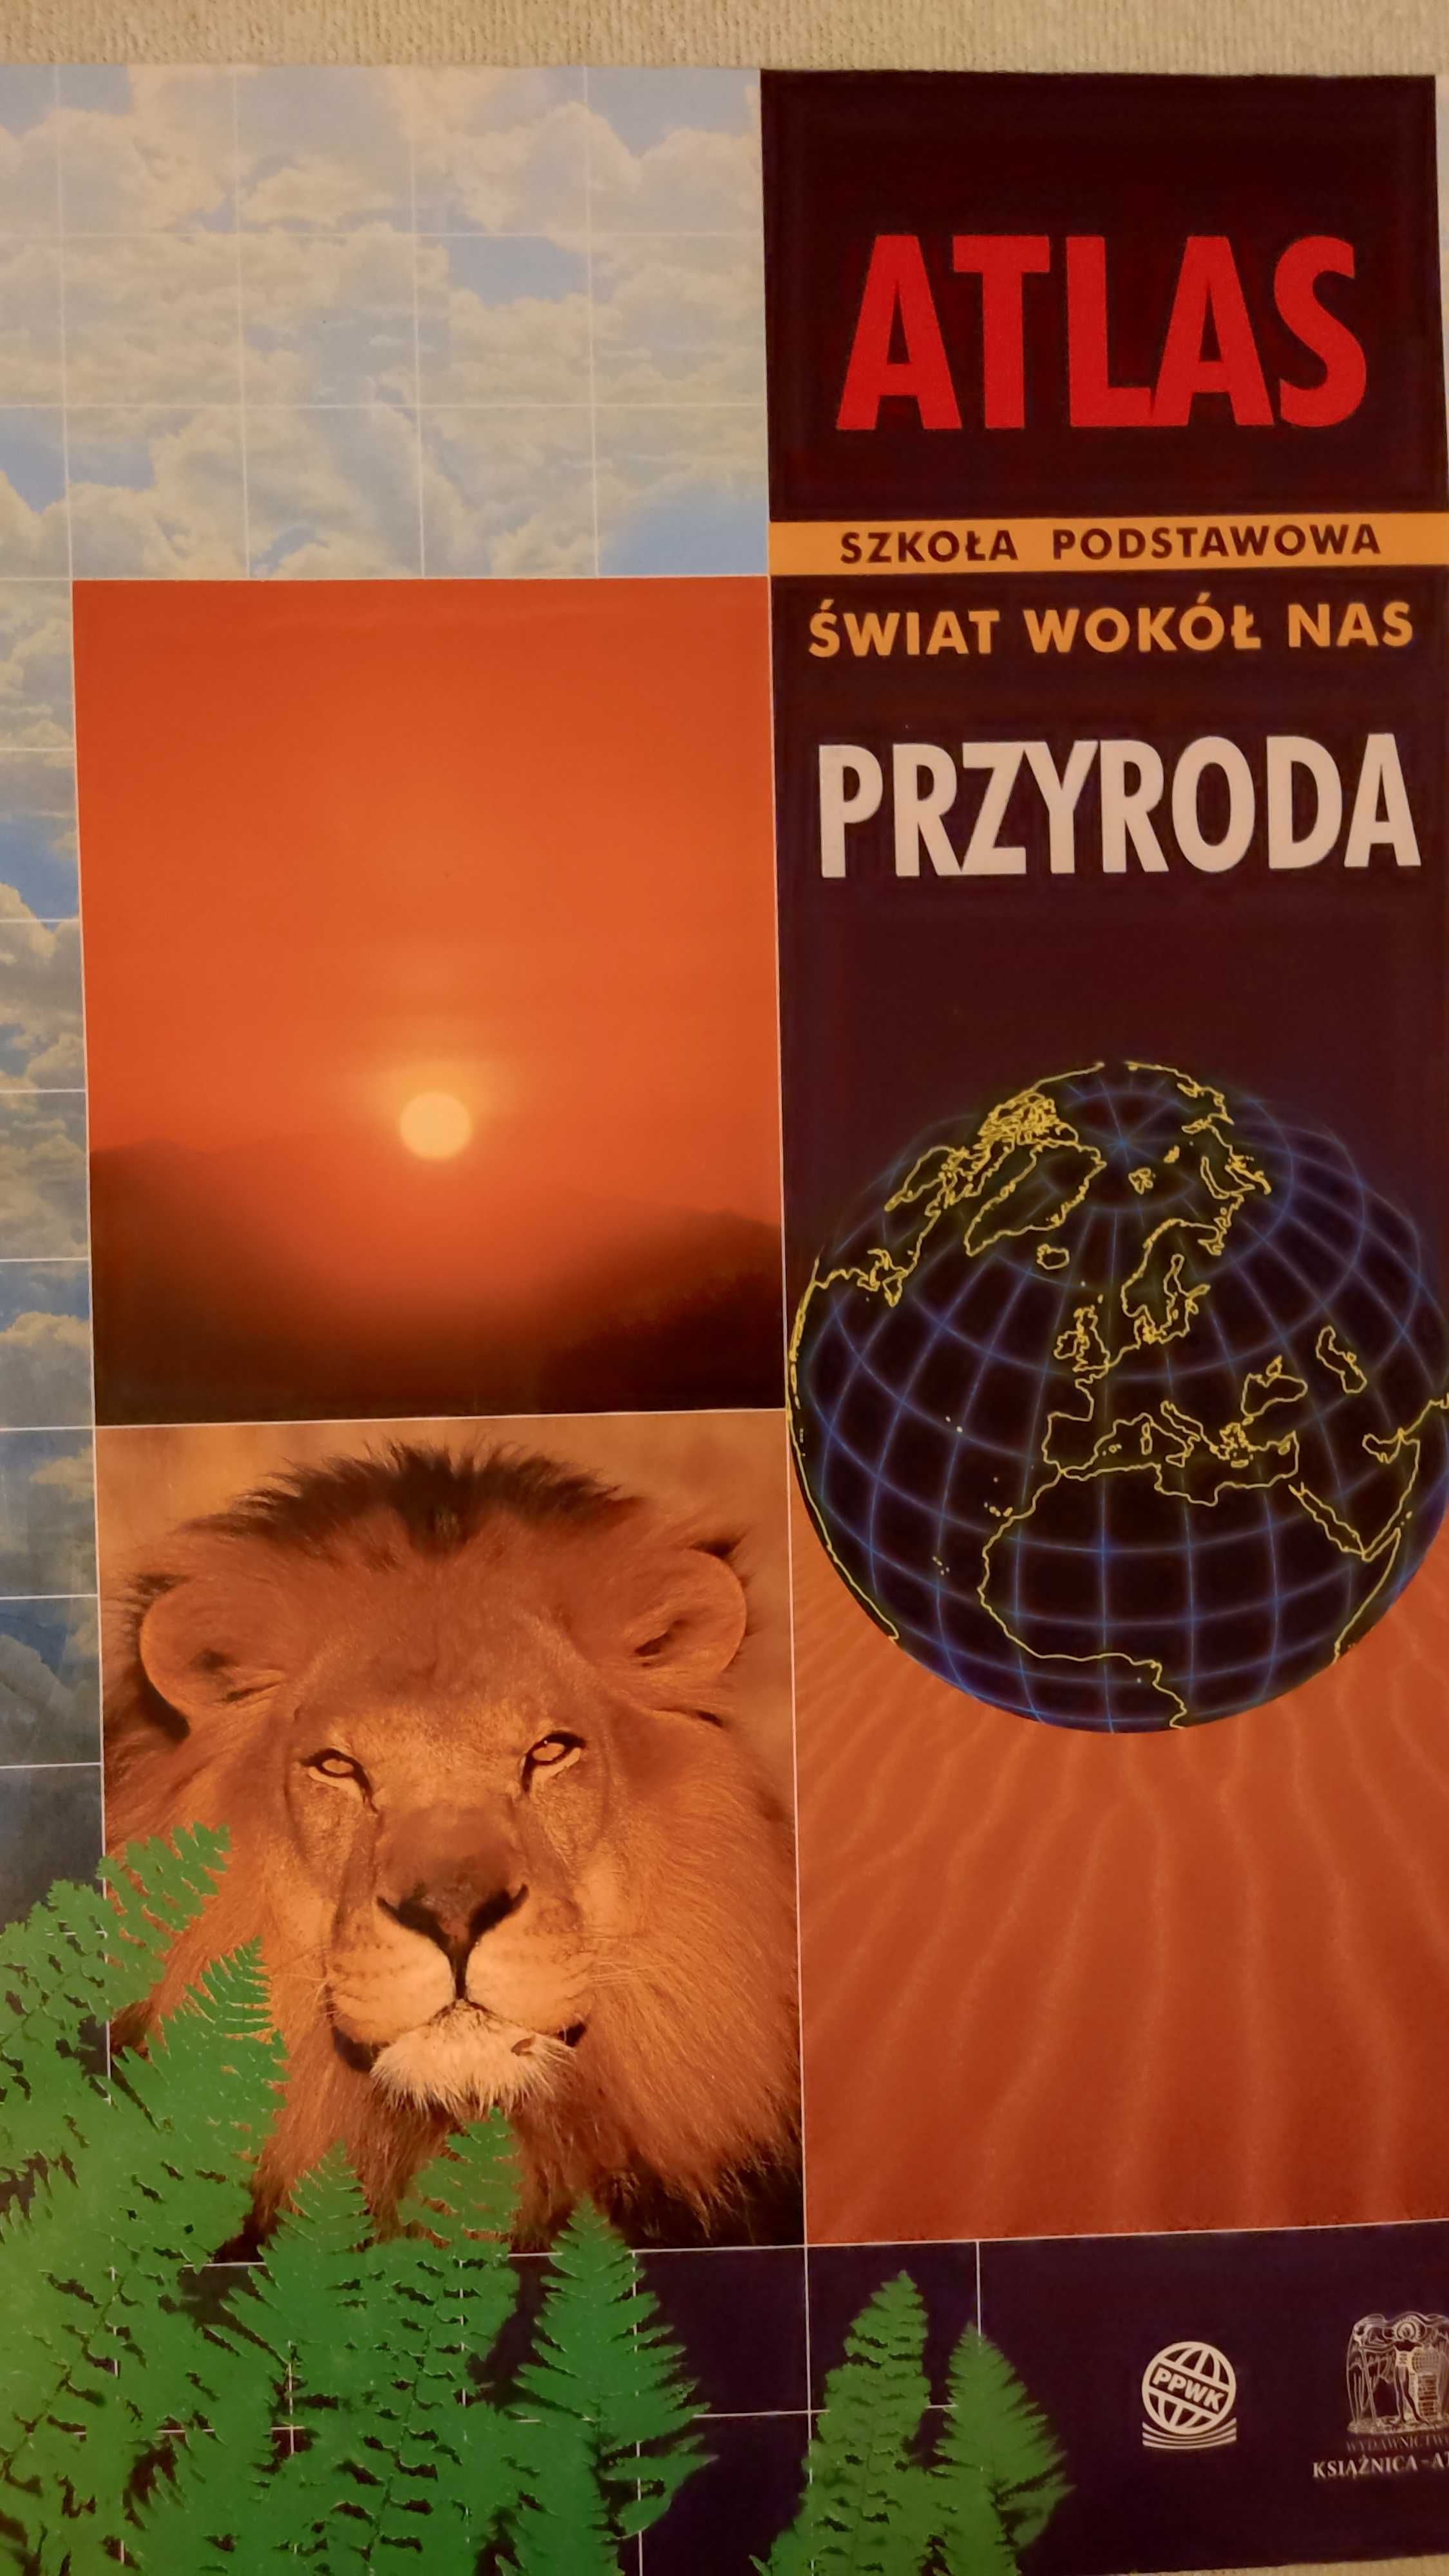 Atlas Świat wokół nas Przyroda - szkoła podstawowa